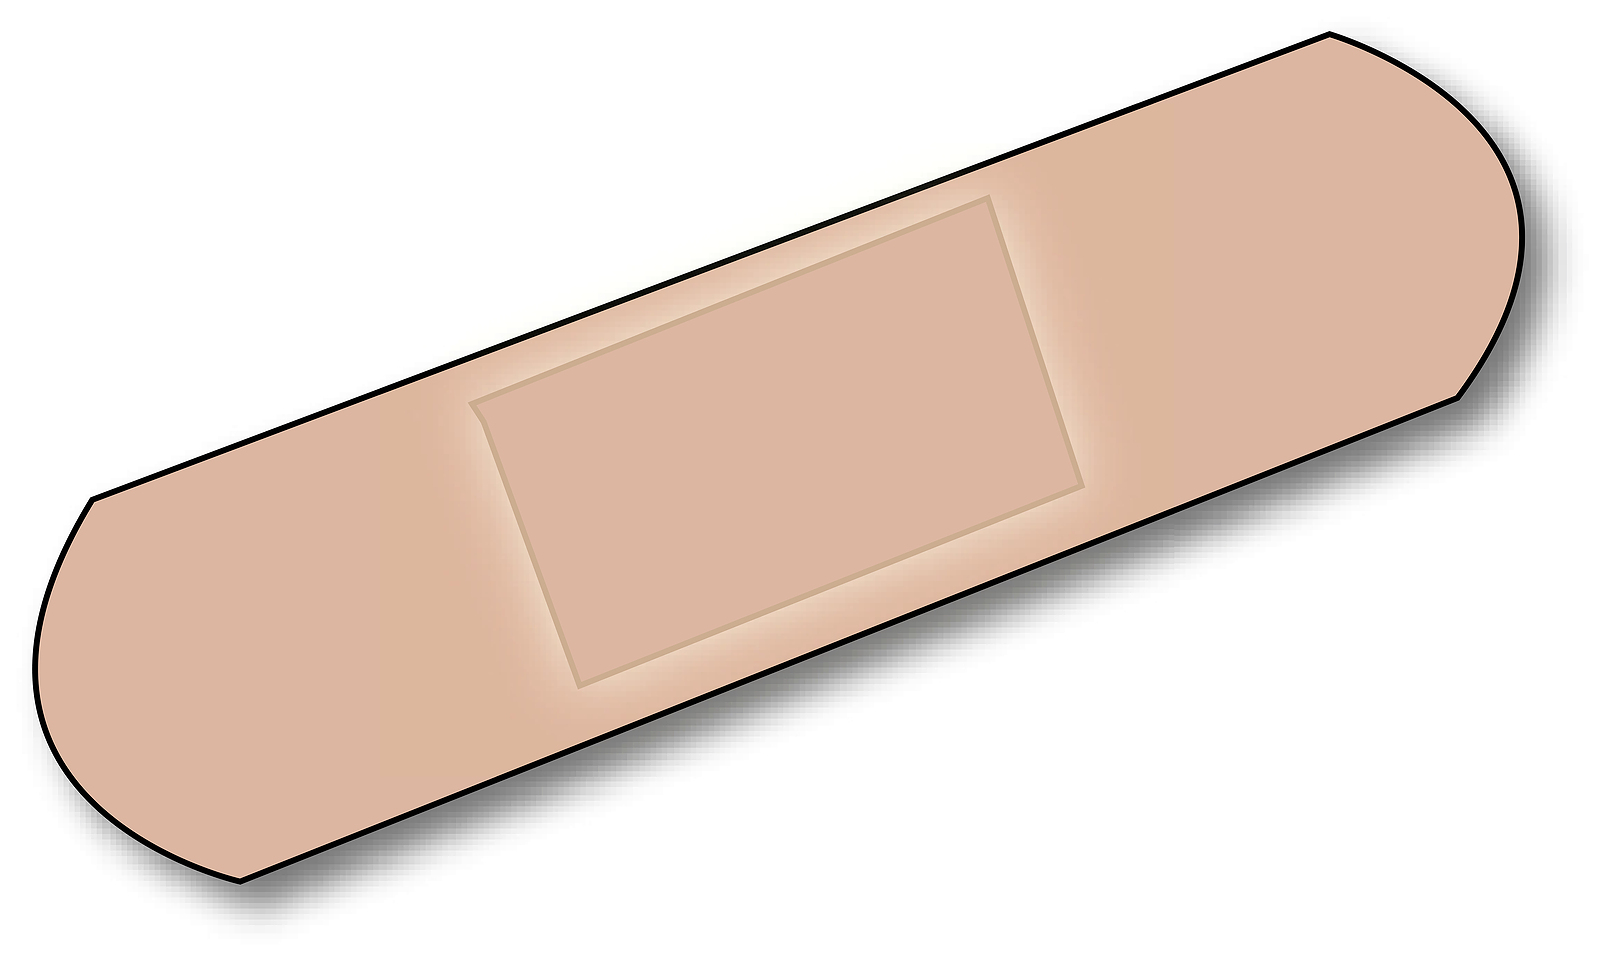 Band aid clip art